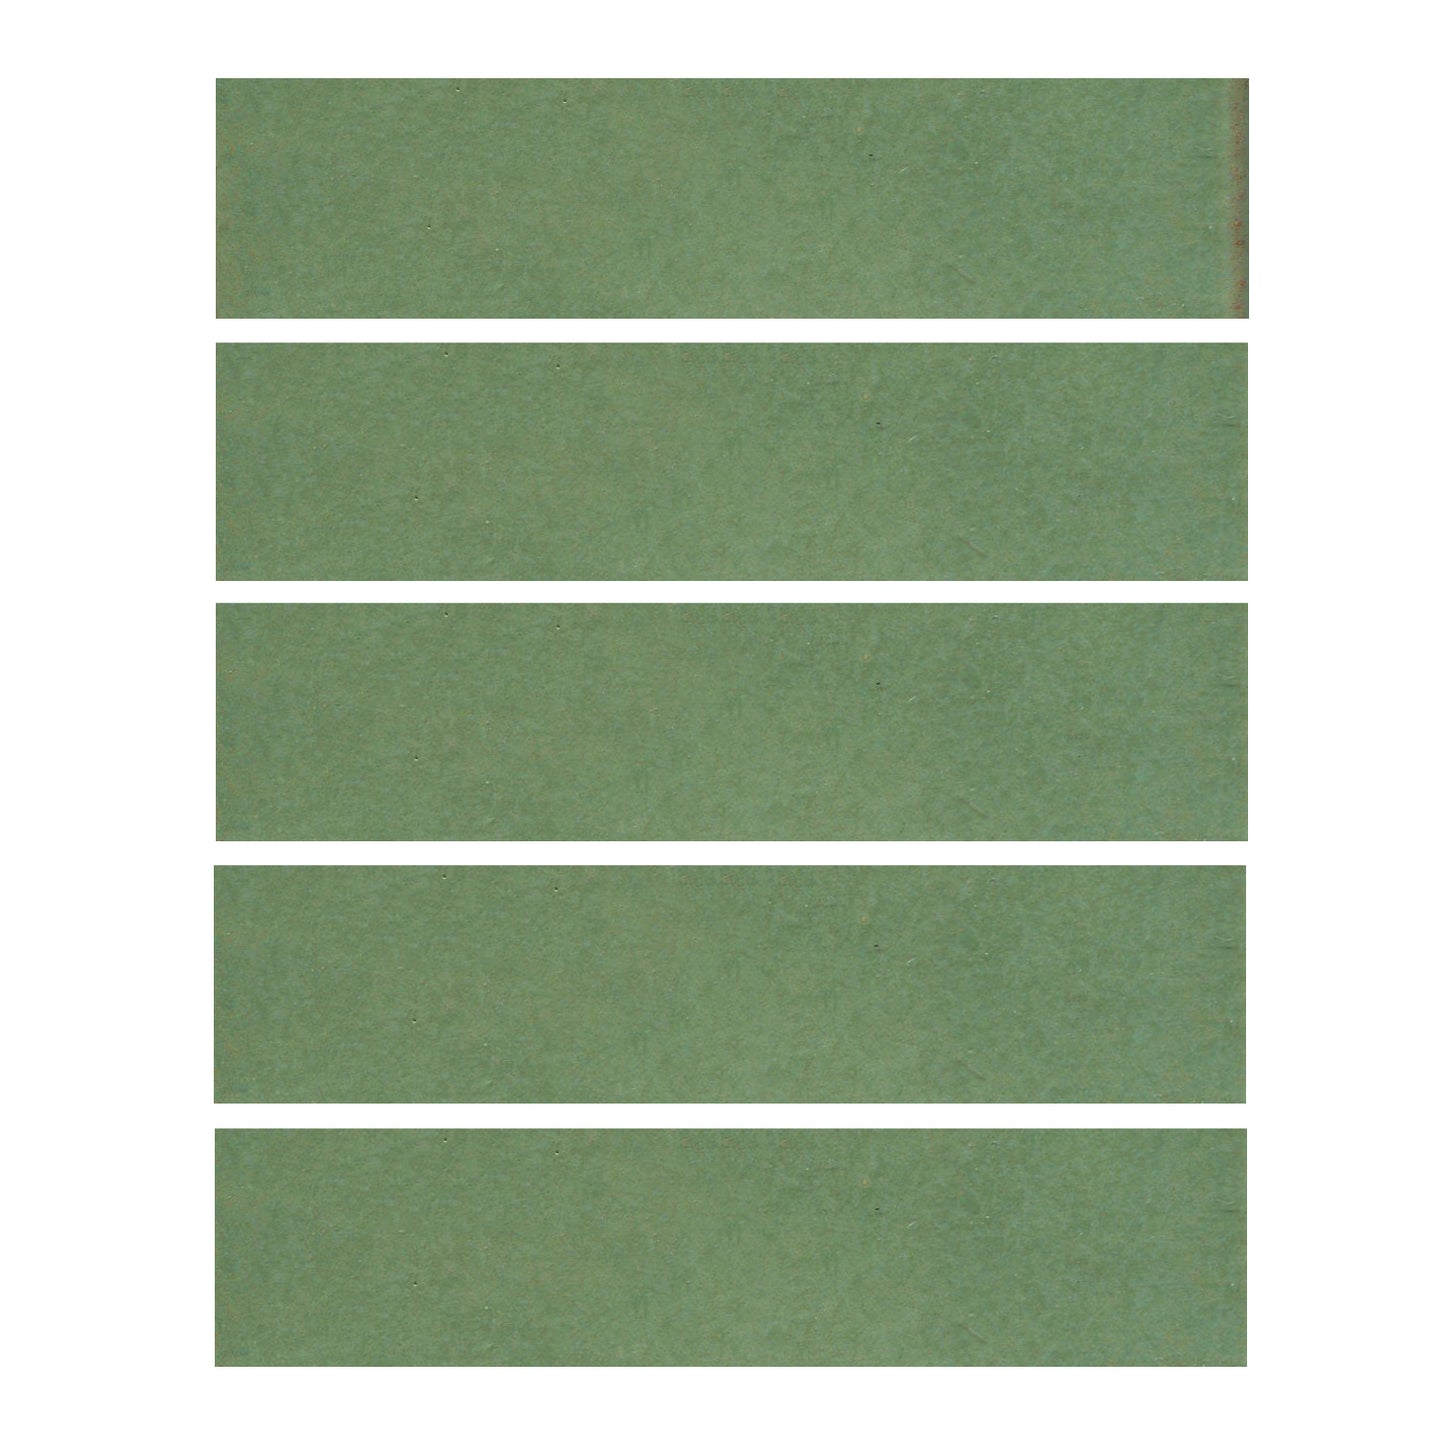 Wasabi green 1.5x6 field tile